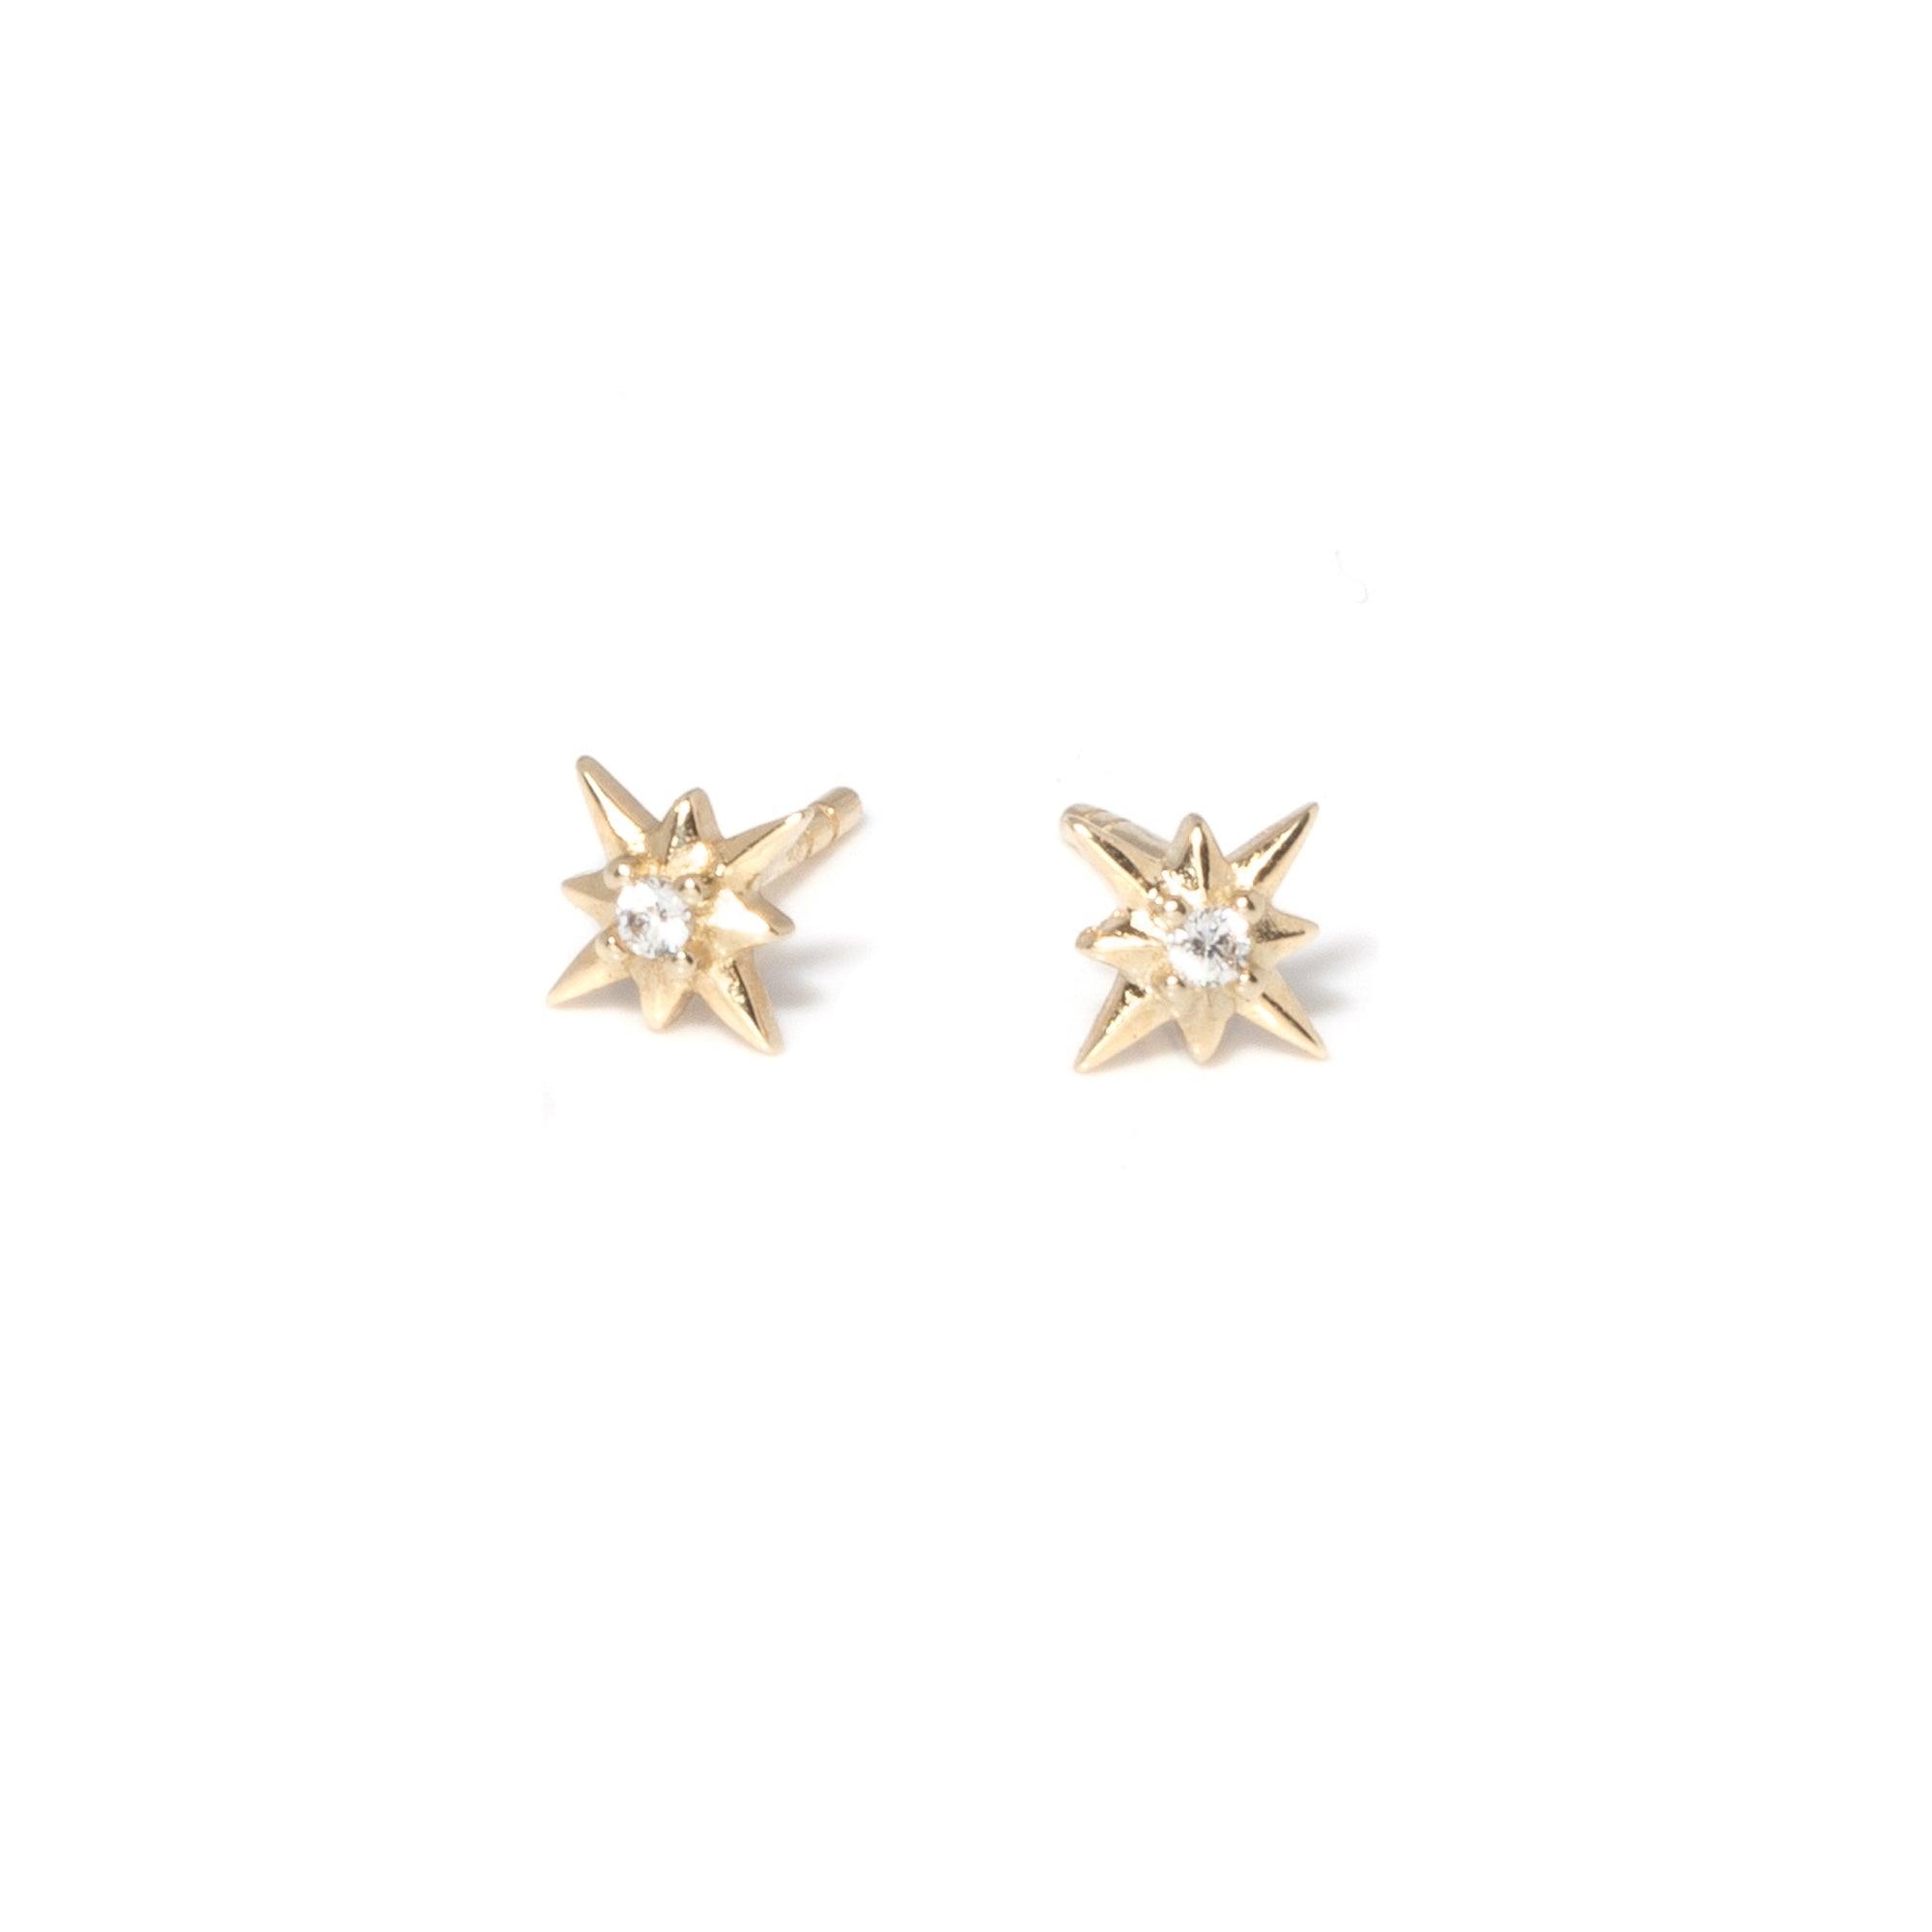 Celestial 9k Gold Stud Earrings - ELLA PALM